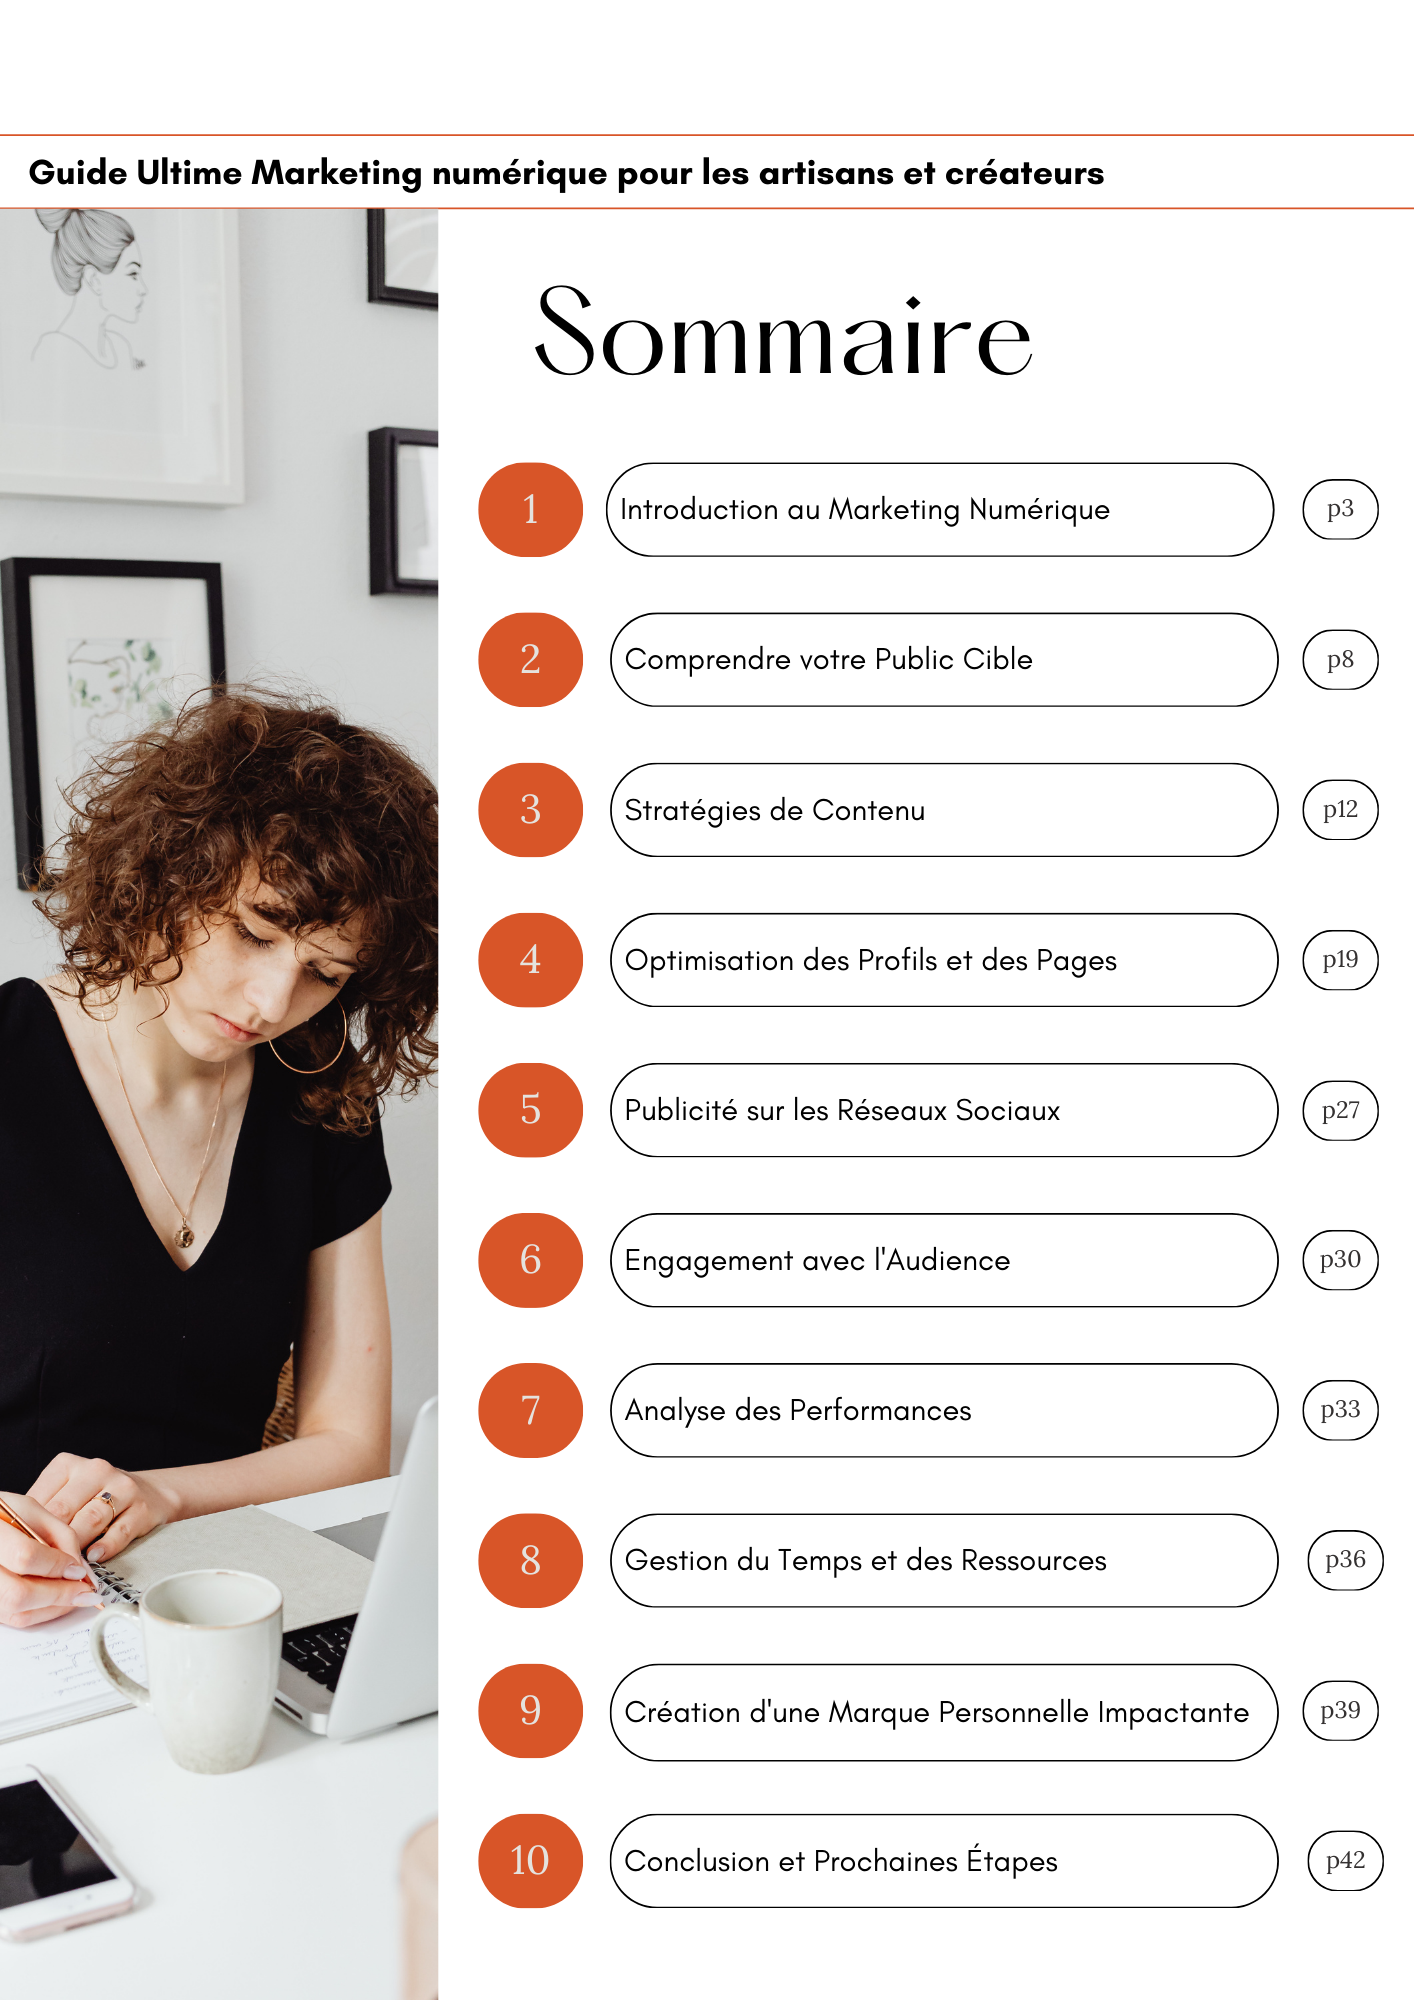 Guide ultime de Marketing Numerique pour les Artisans et Createurs PDF